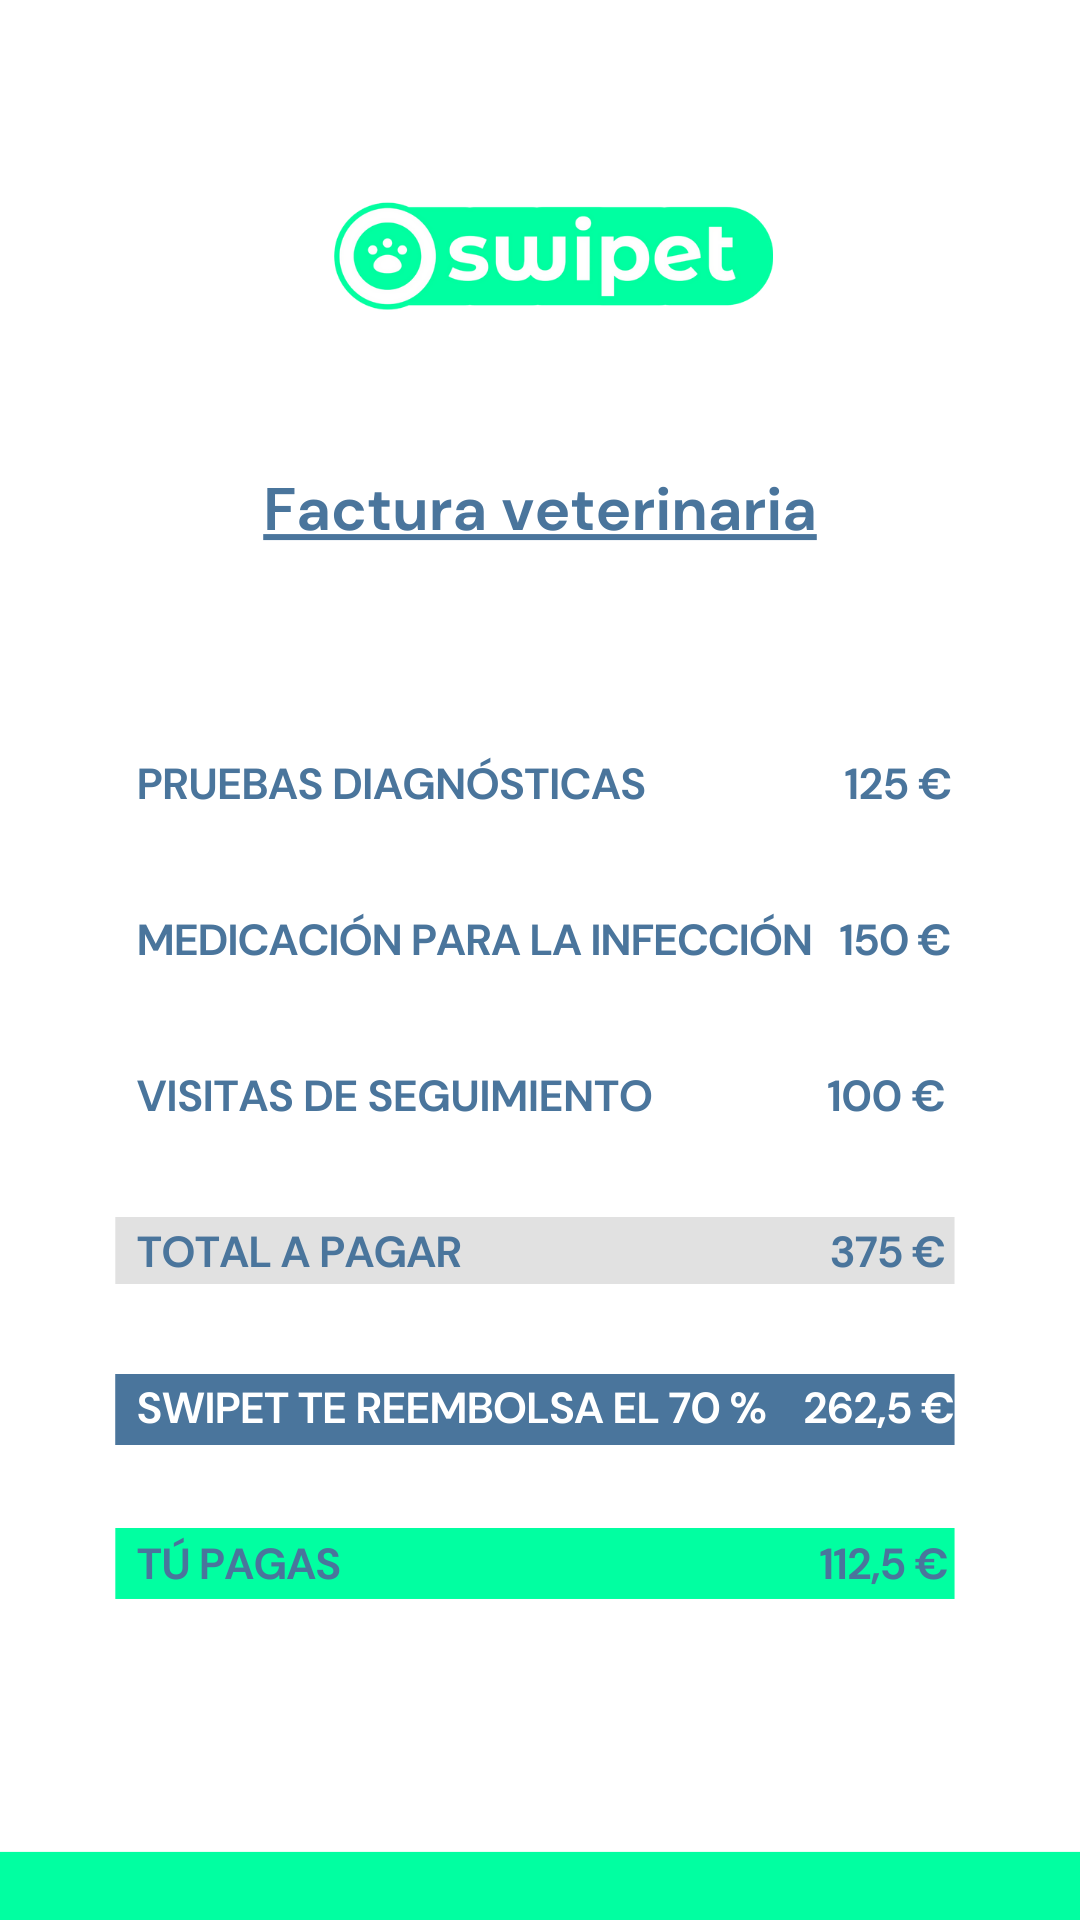 Visita al veterinario limpieza dental refuerzo de vacunas total a pagar swipet te reembolsa el 70% tú pagas (4)